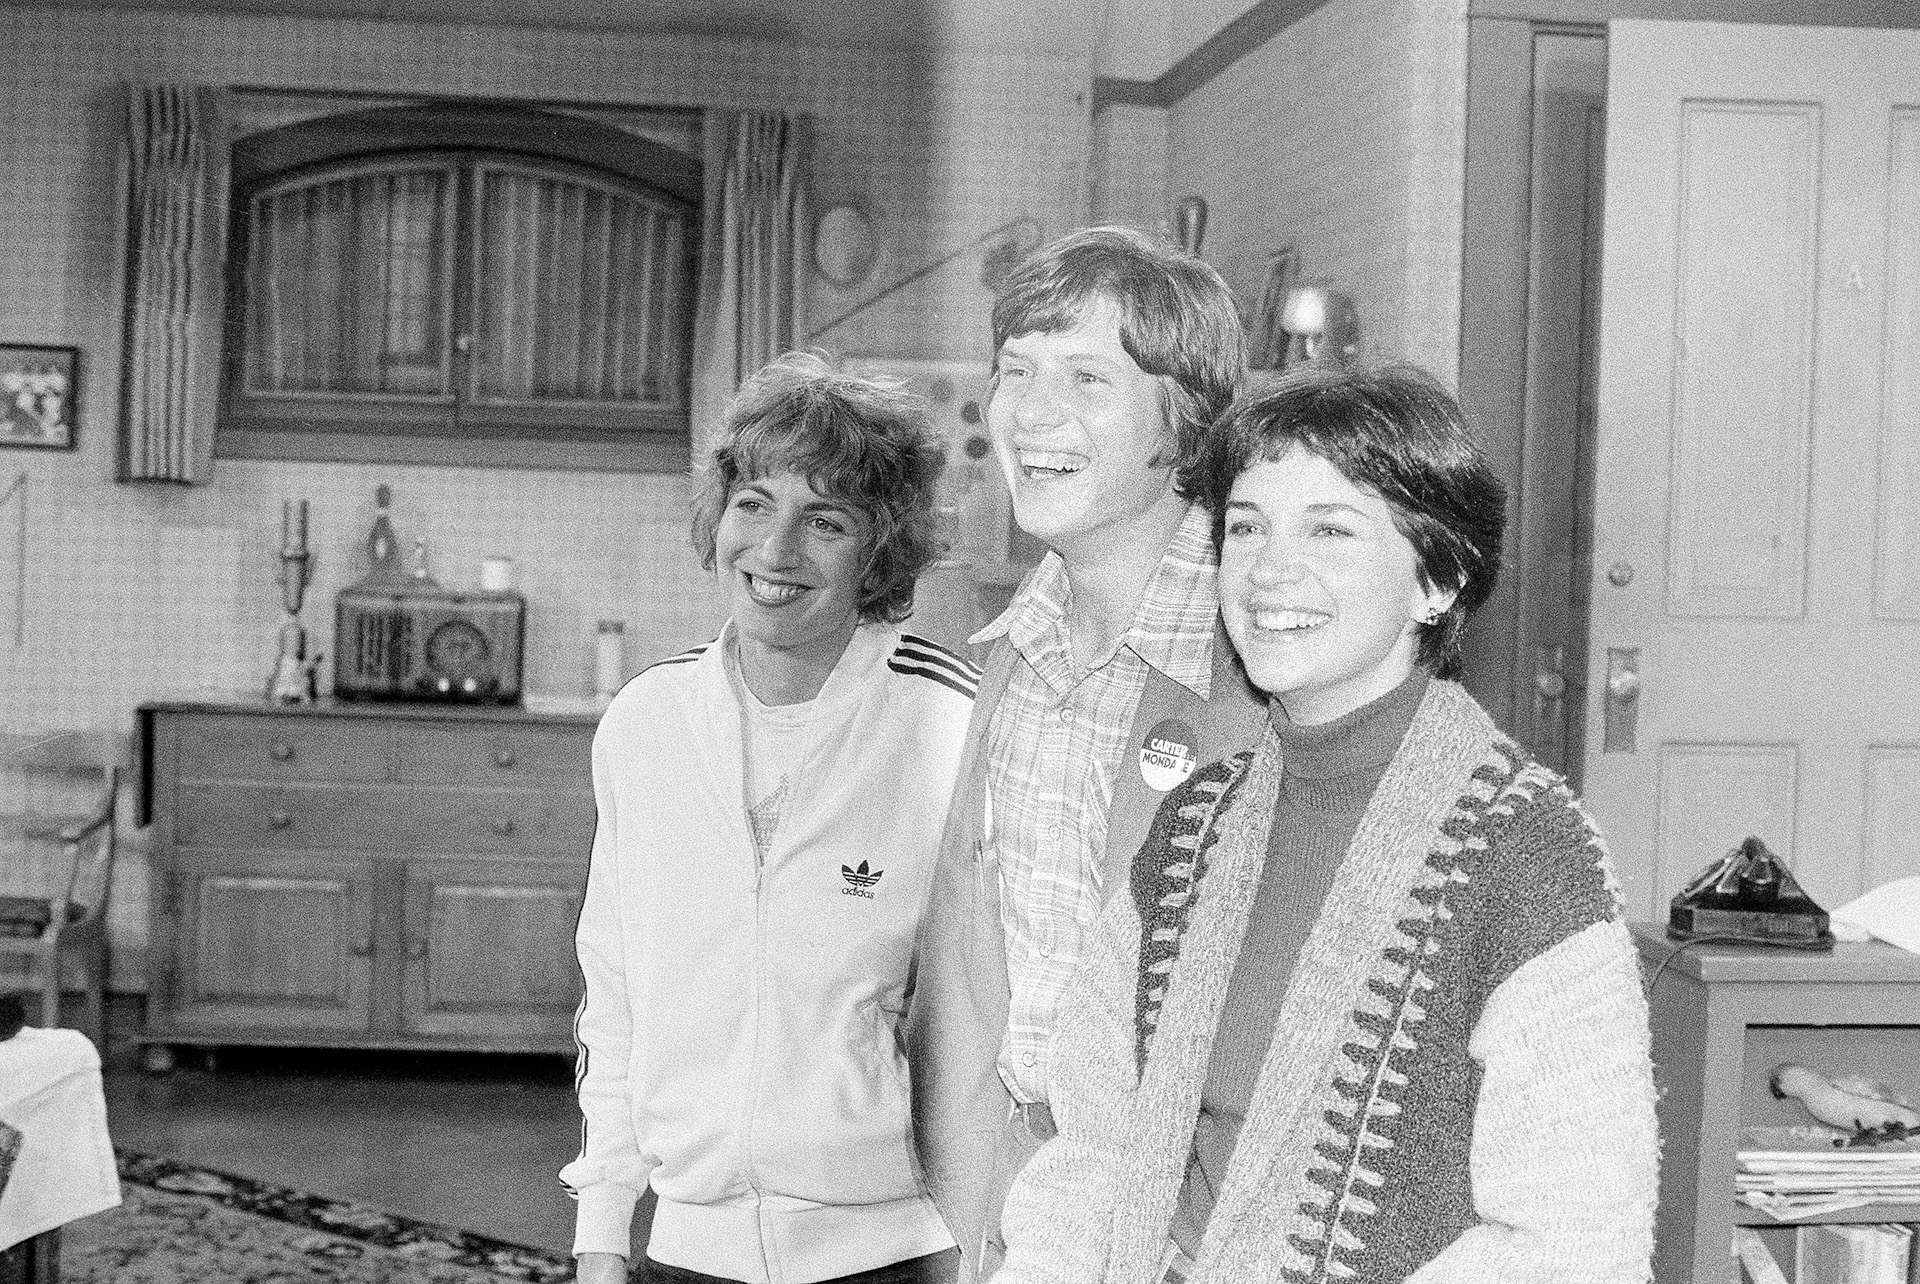 ARCHIVO - Chip Carter, hijo del candidato presidencial demócrata Jimmy Carter, posa con Penny Marshall, a la izquierda, y Cindy Williams, a la derecha, en el plató de la comedia "Laverne and Shirley" en Paramount Studios en Los Ángeles, el 21 de septiembre de 1976.  (AP Photo/David F. Smith, File)